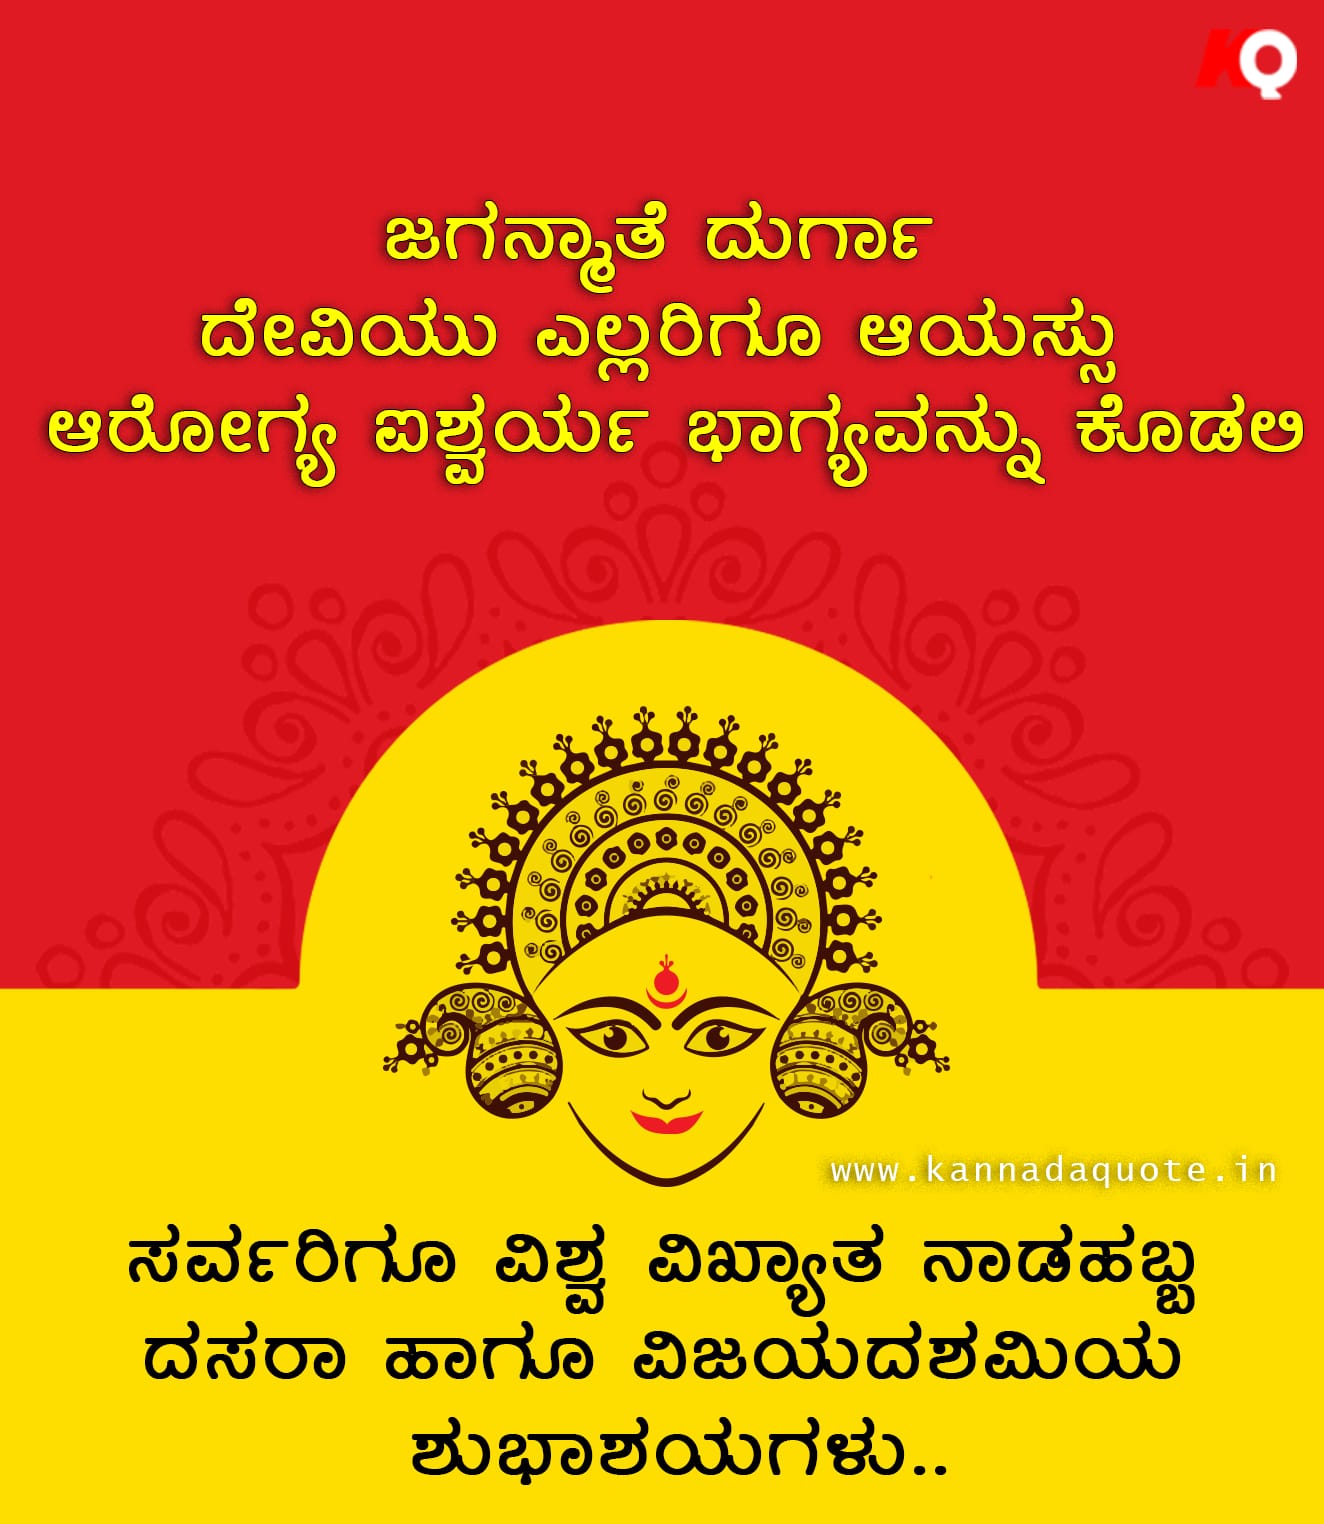 Kannada language happy Vijay dashami wishes